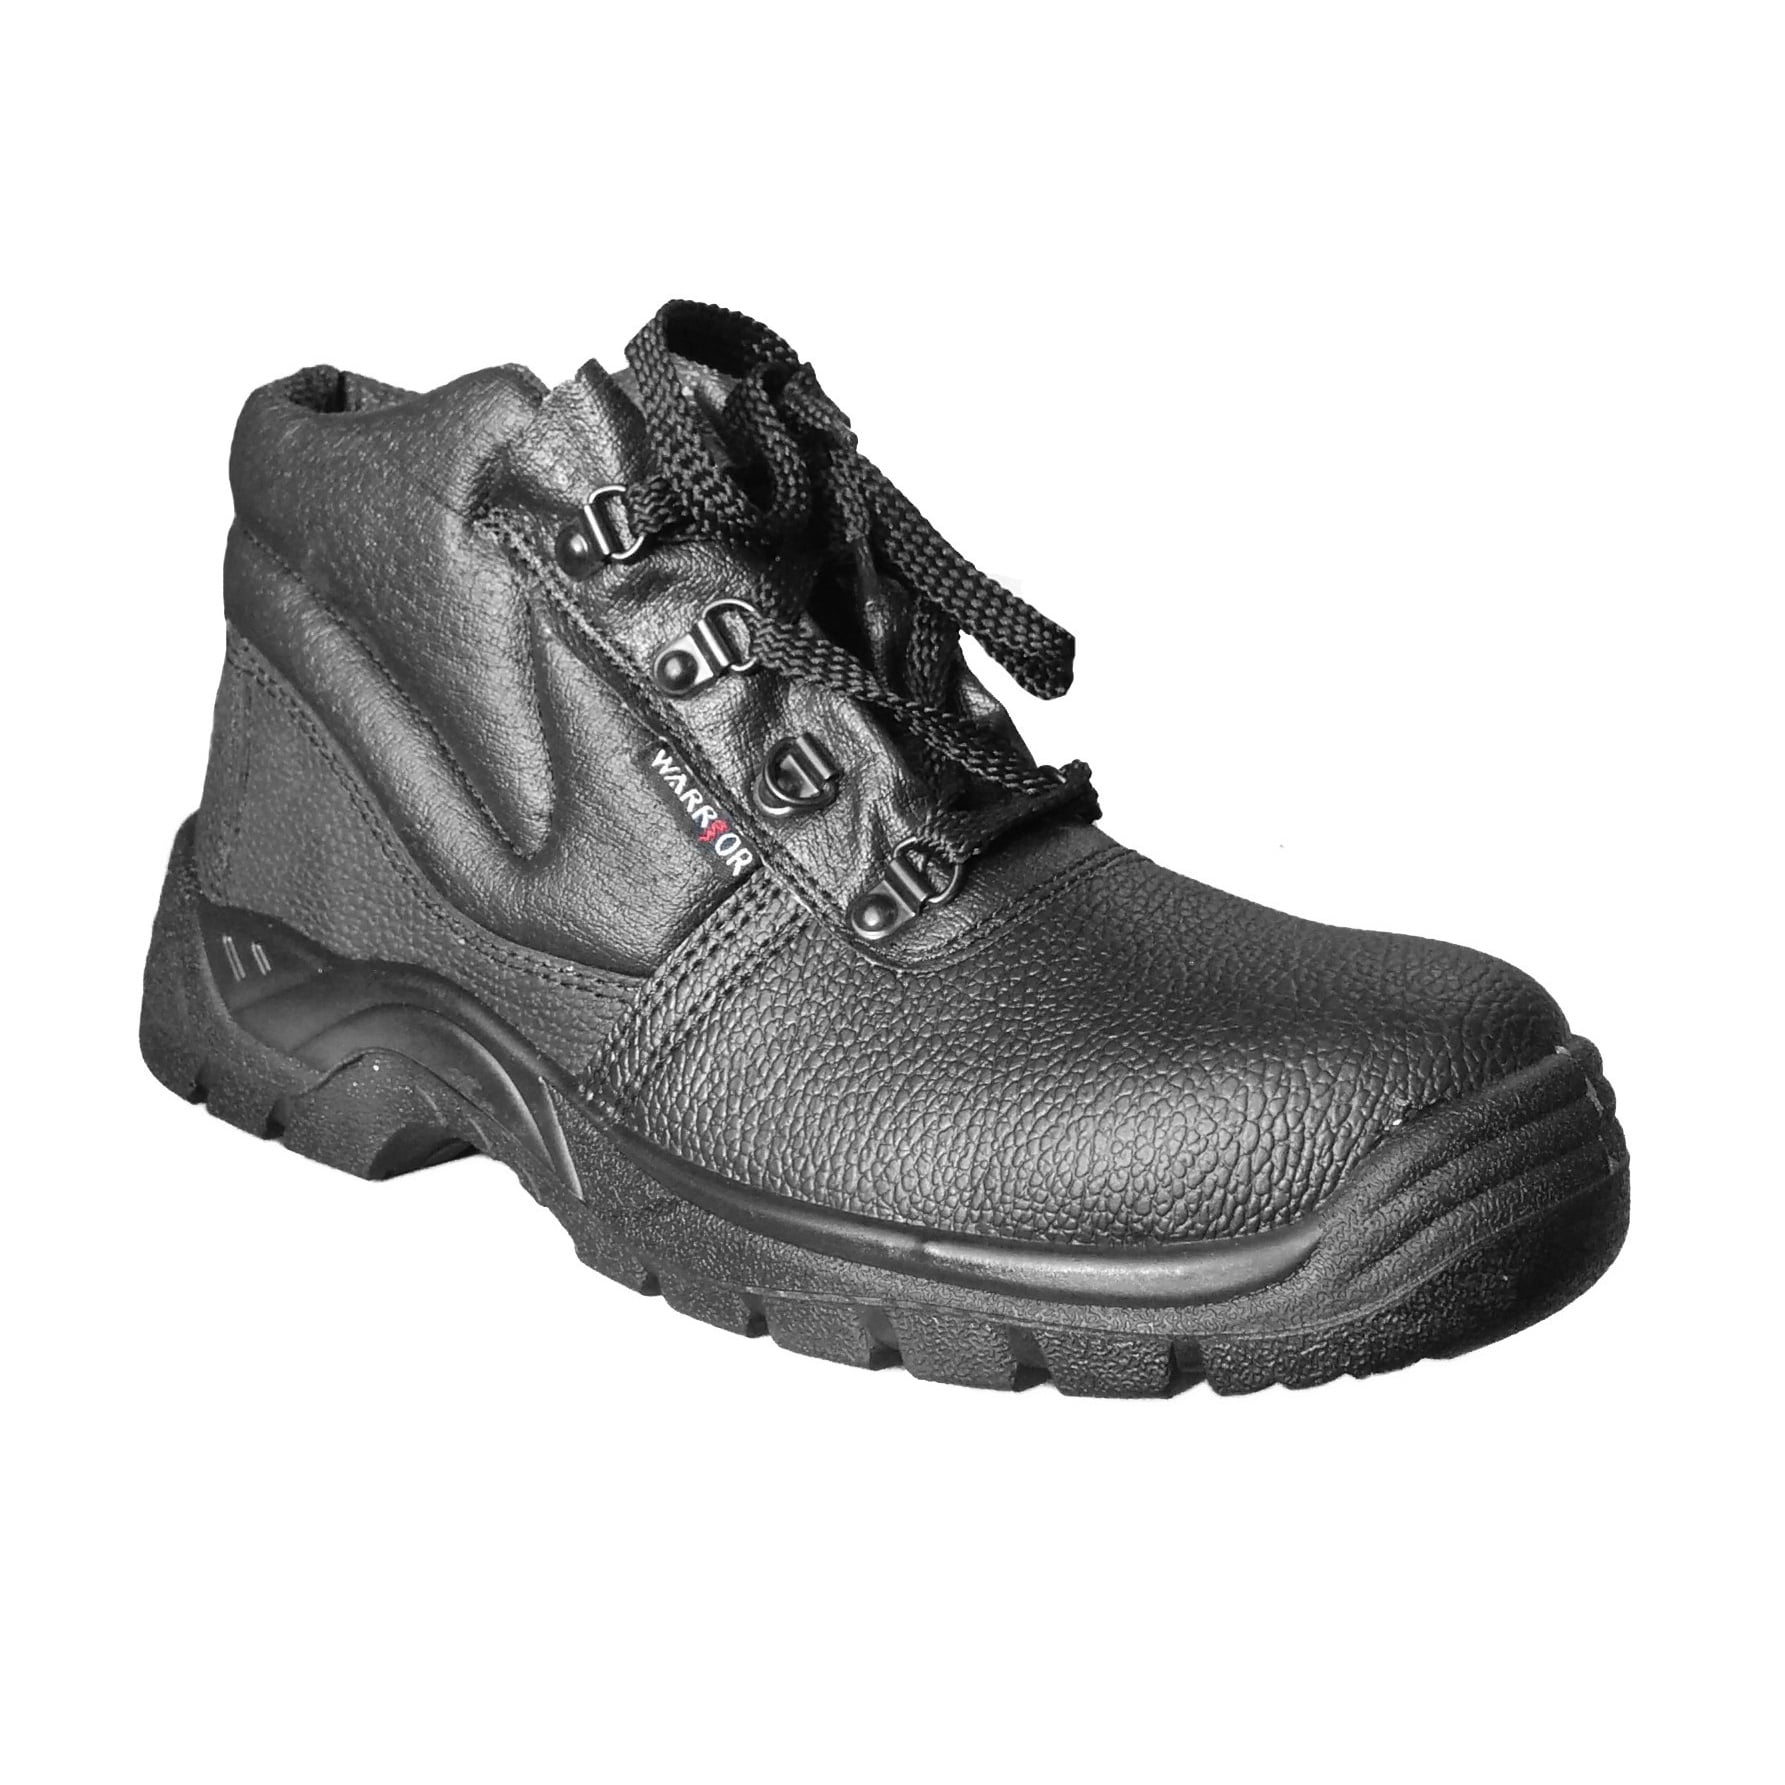 warrior steel toe cap boots